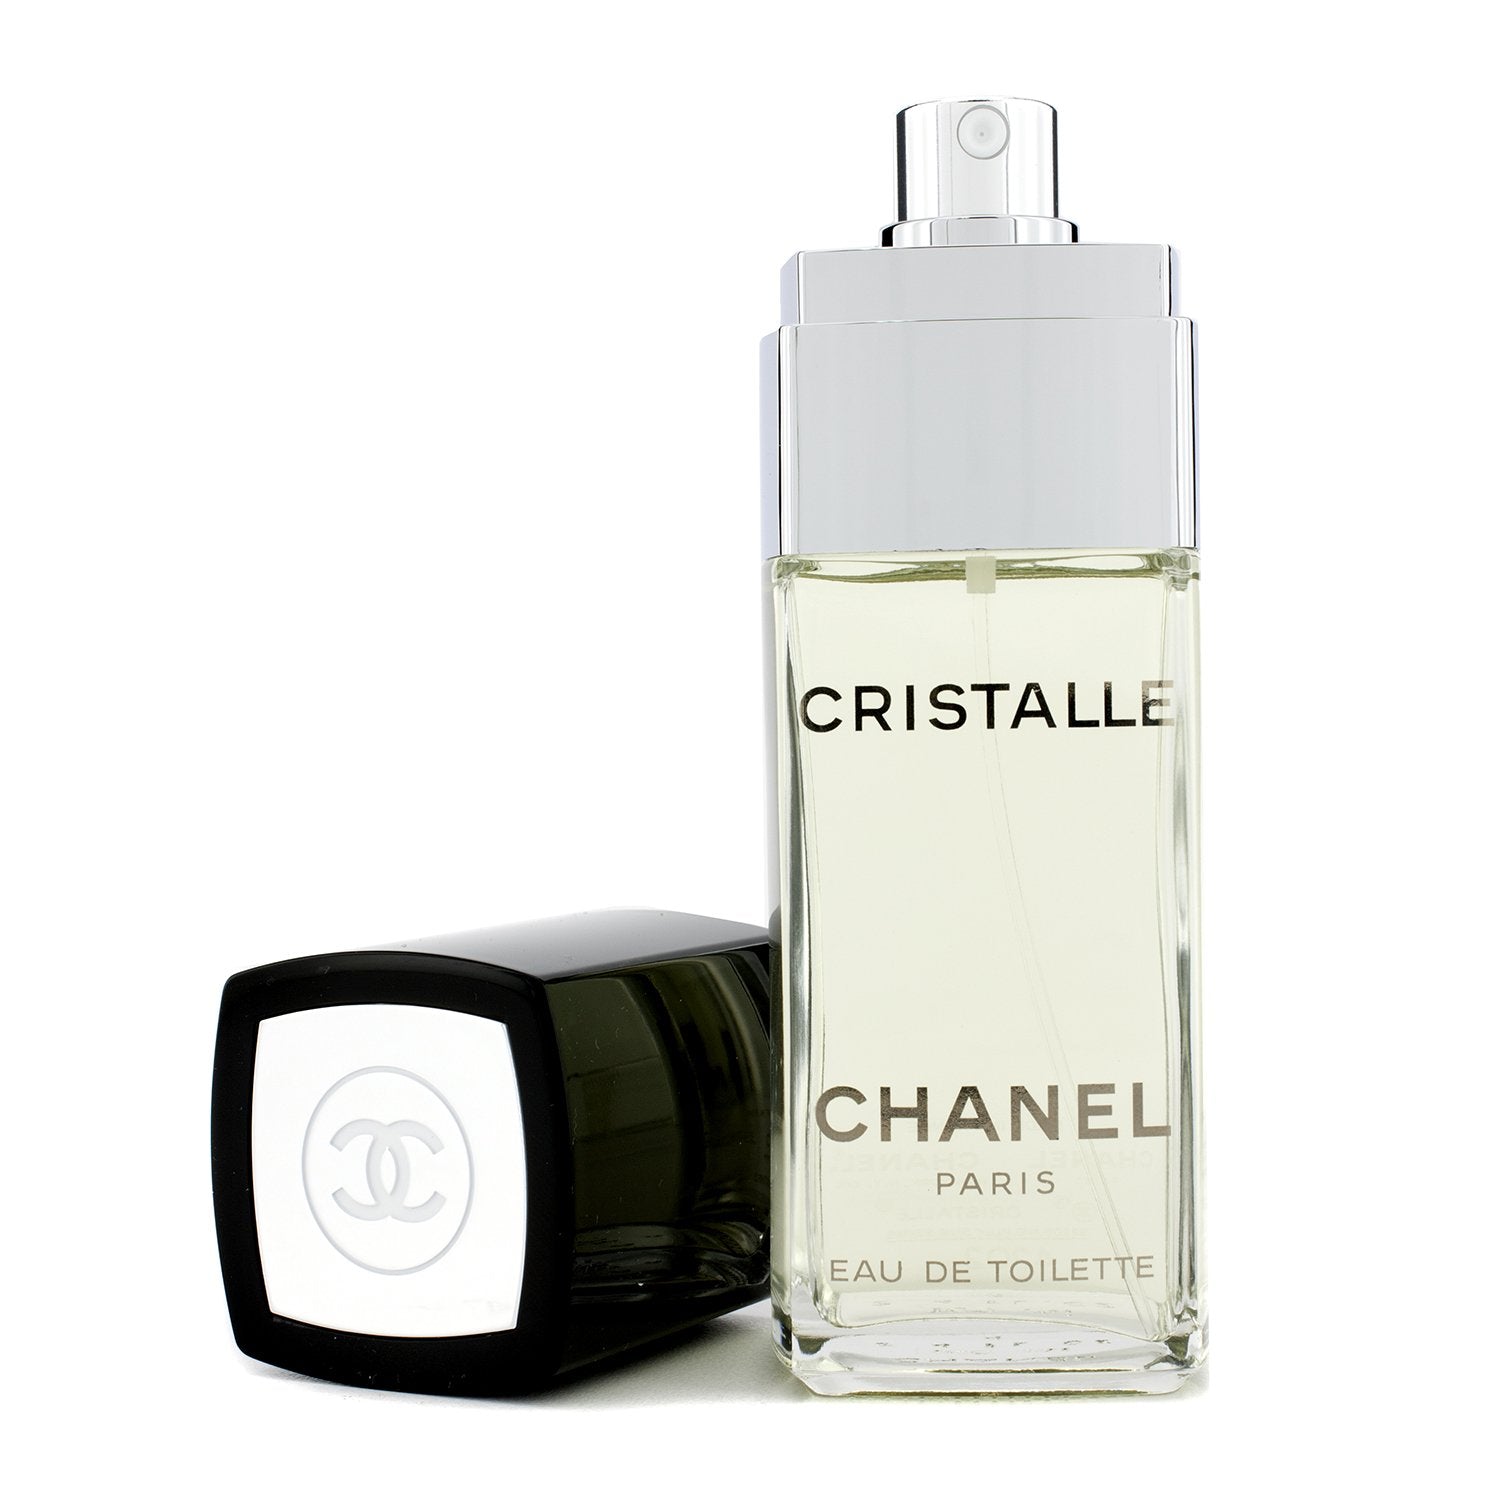 Chanel Cristalle Eau De Toilette Edt 4ml 0.13 Fl. Oz. 